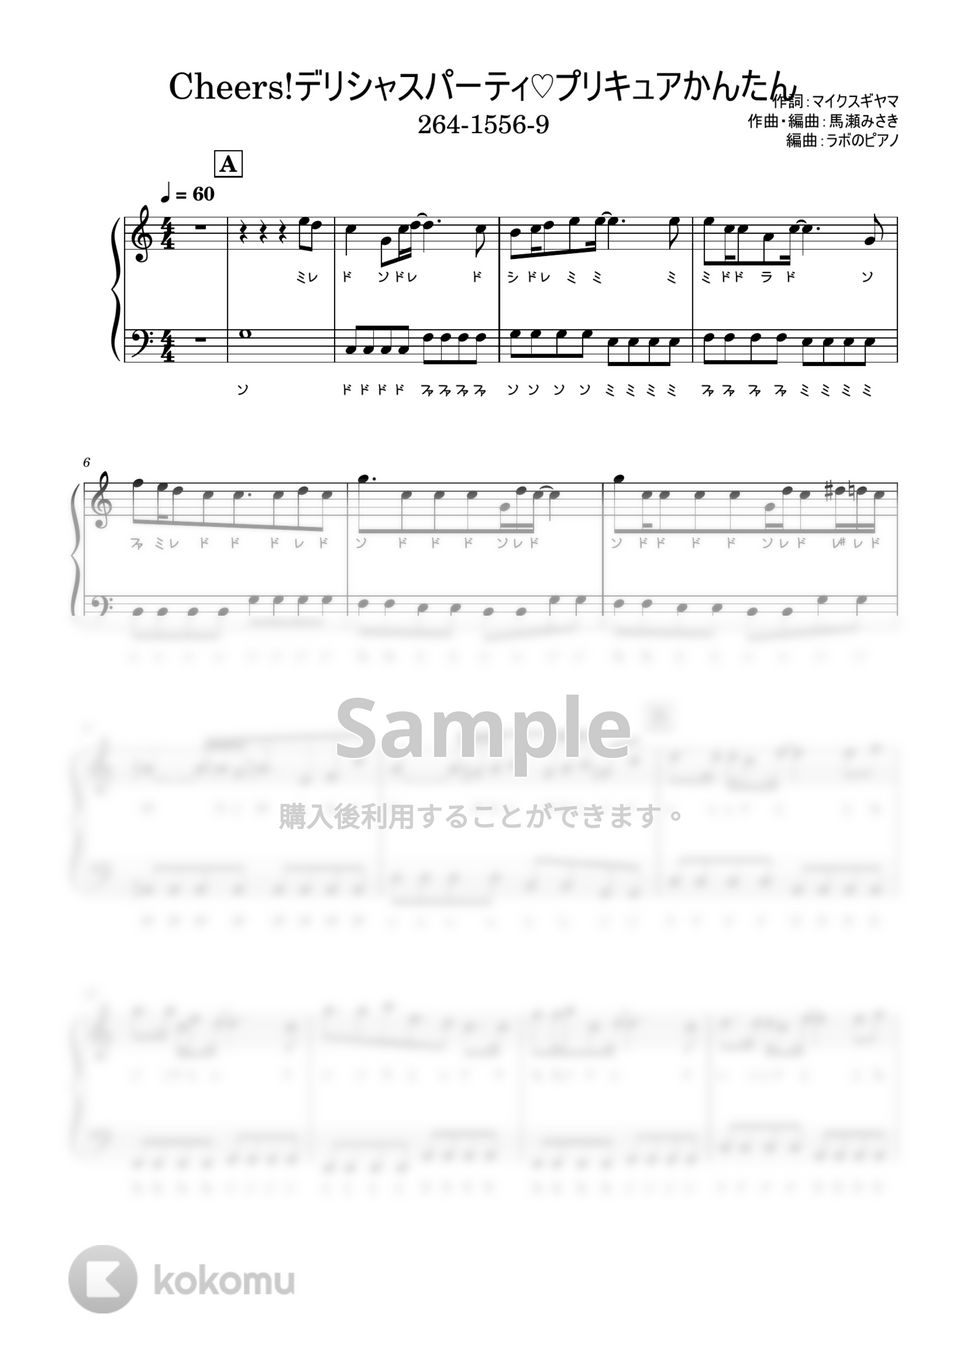 Machico - Cheers! デリシャスパーティ♡プリキュアOP ドレミ付 かんたんver. by ラボのピアノ